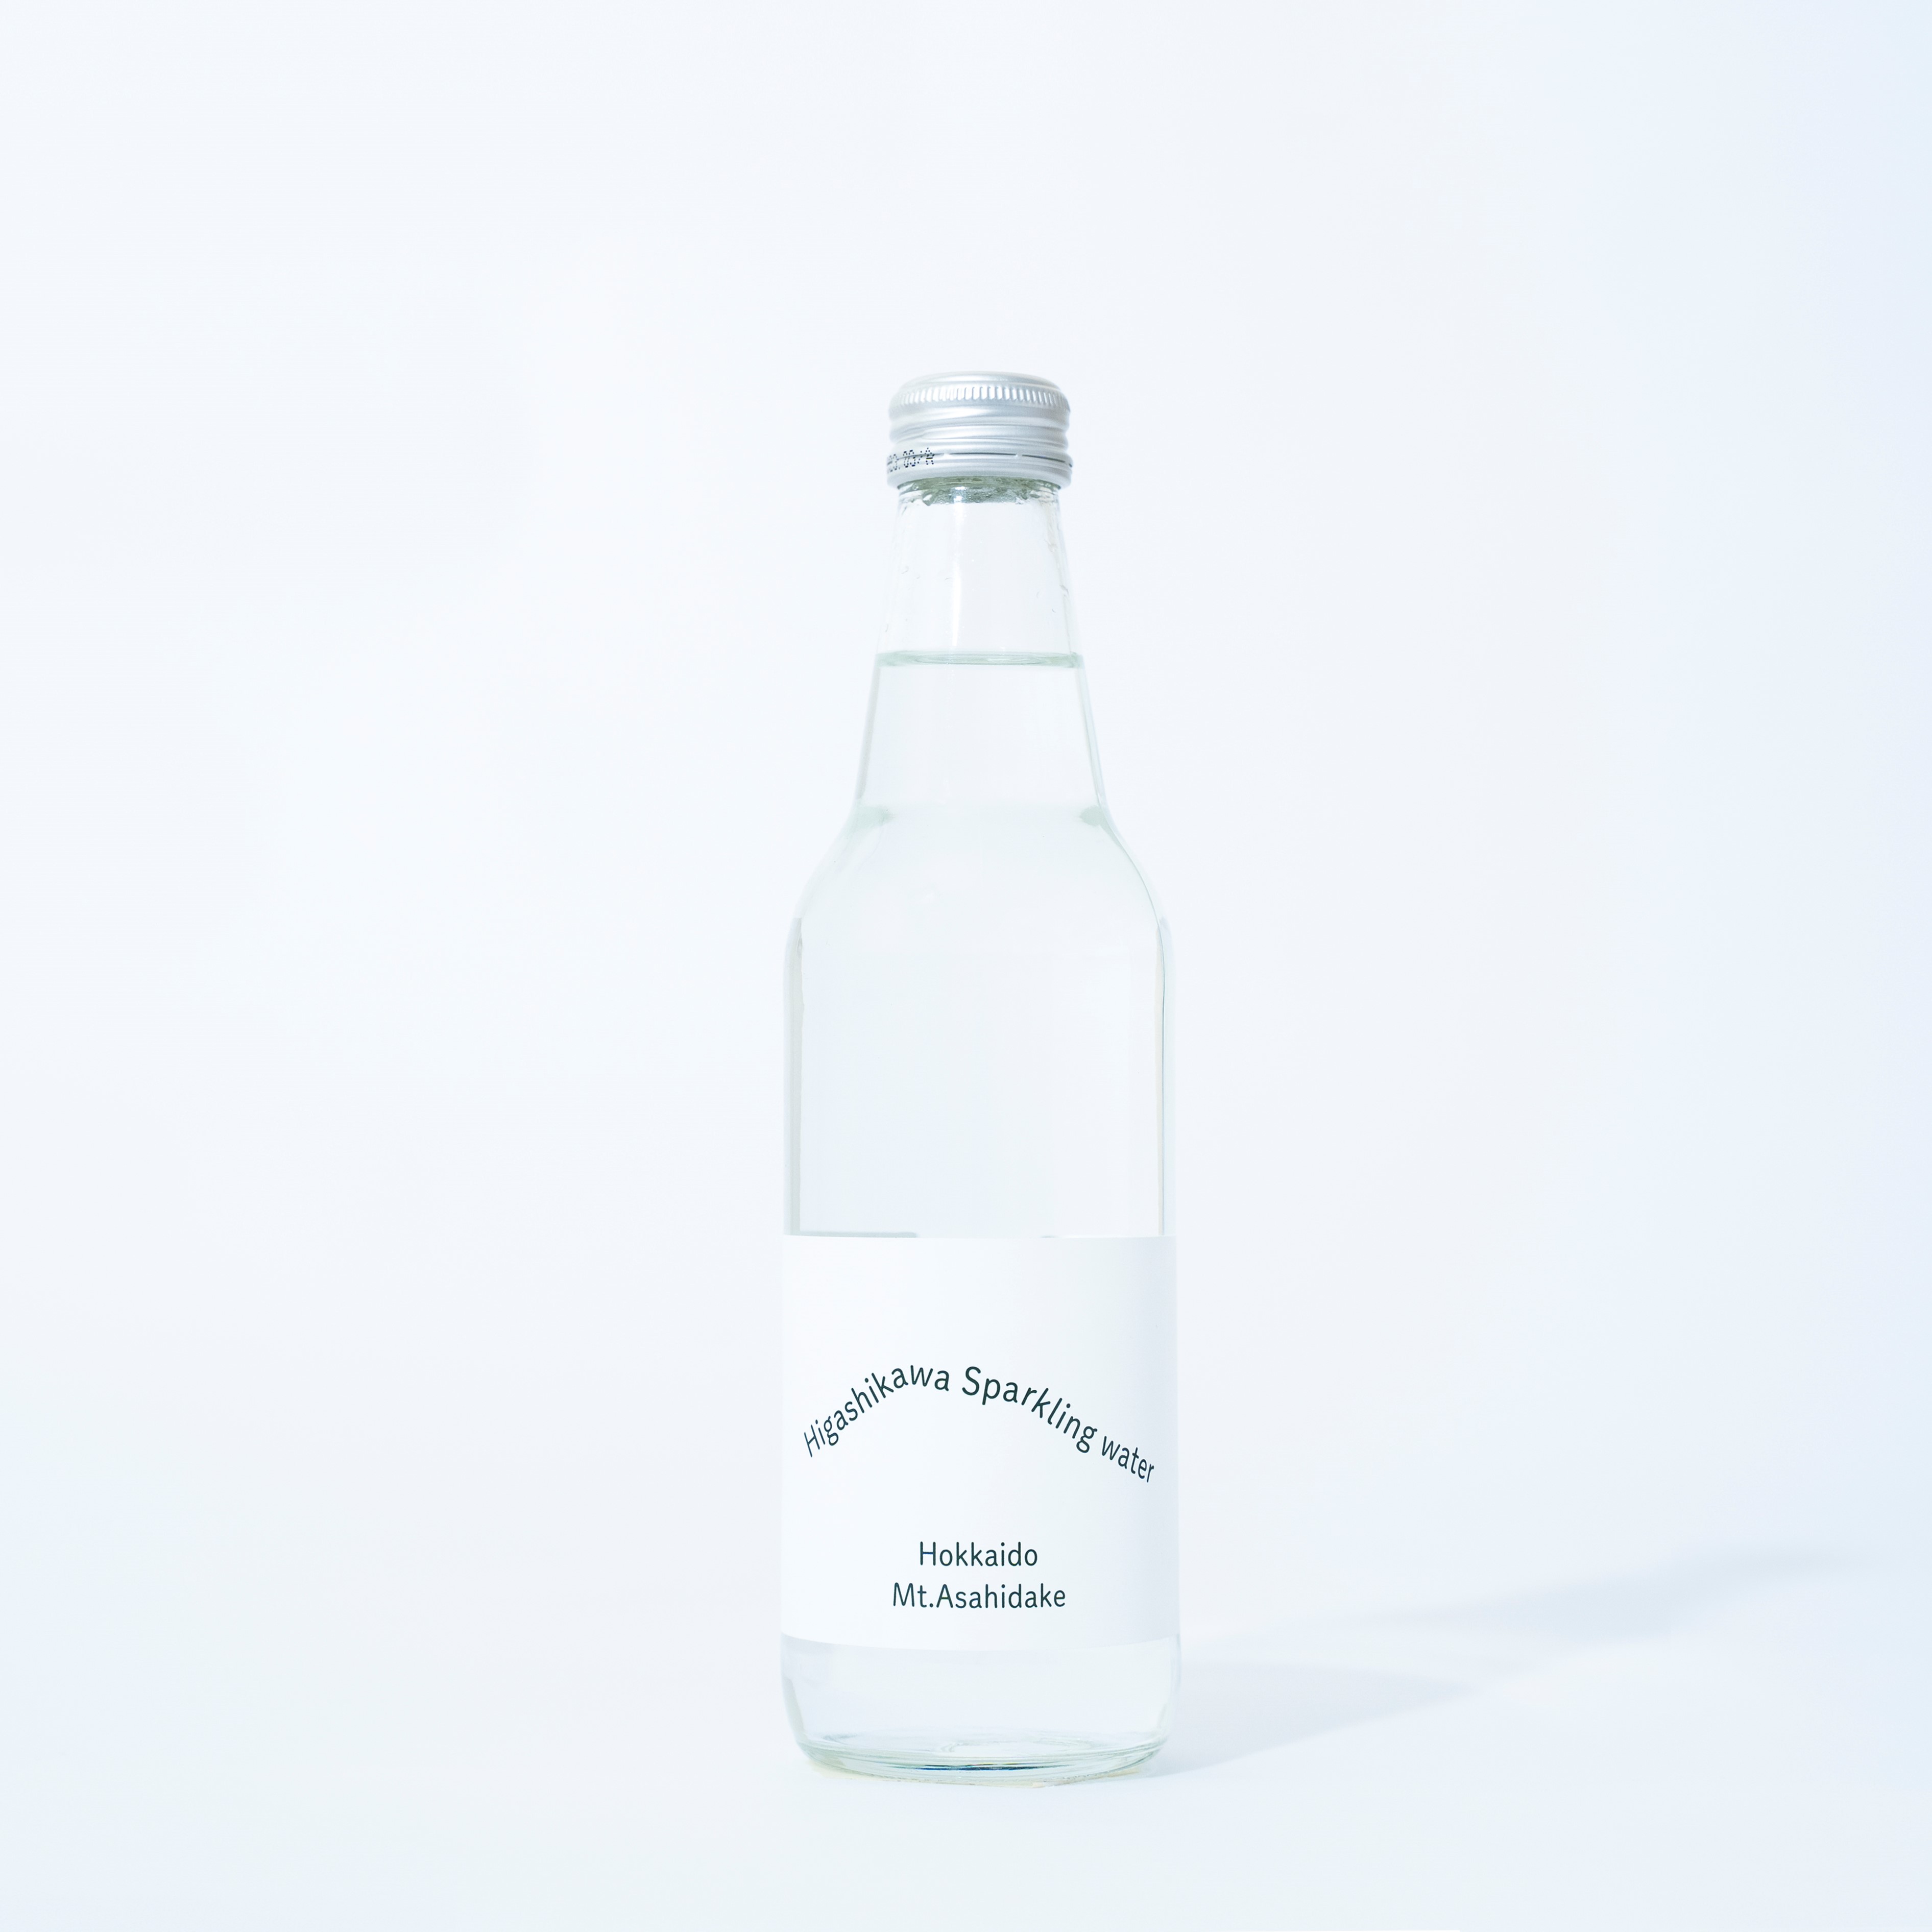 Higashikawa Sparkling water (東川スパークリングウォ—ター)Basic:微発泡タイプ 12本入り